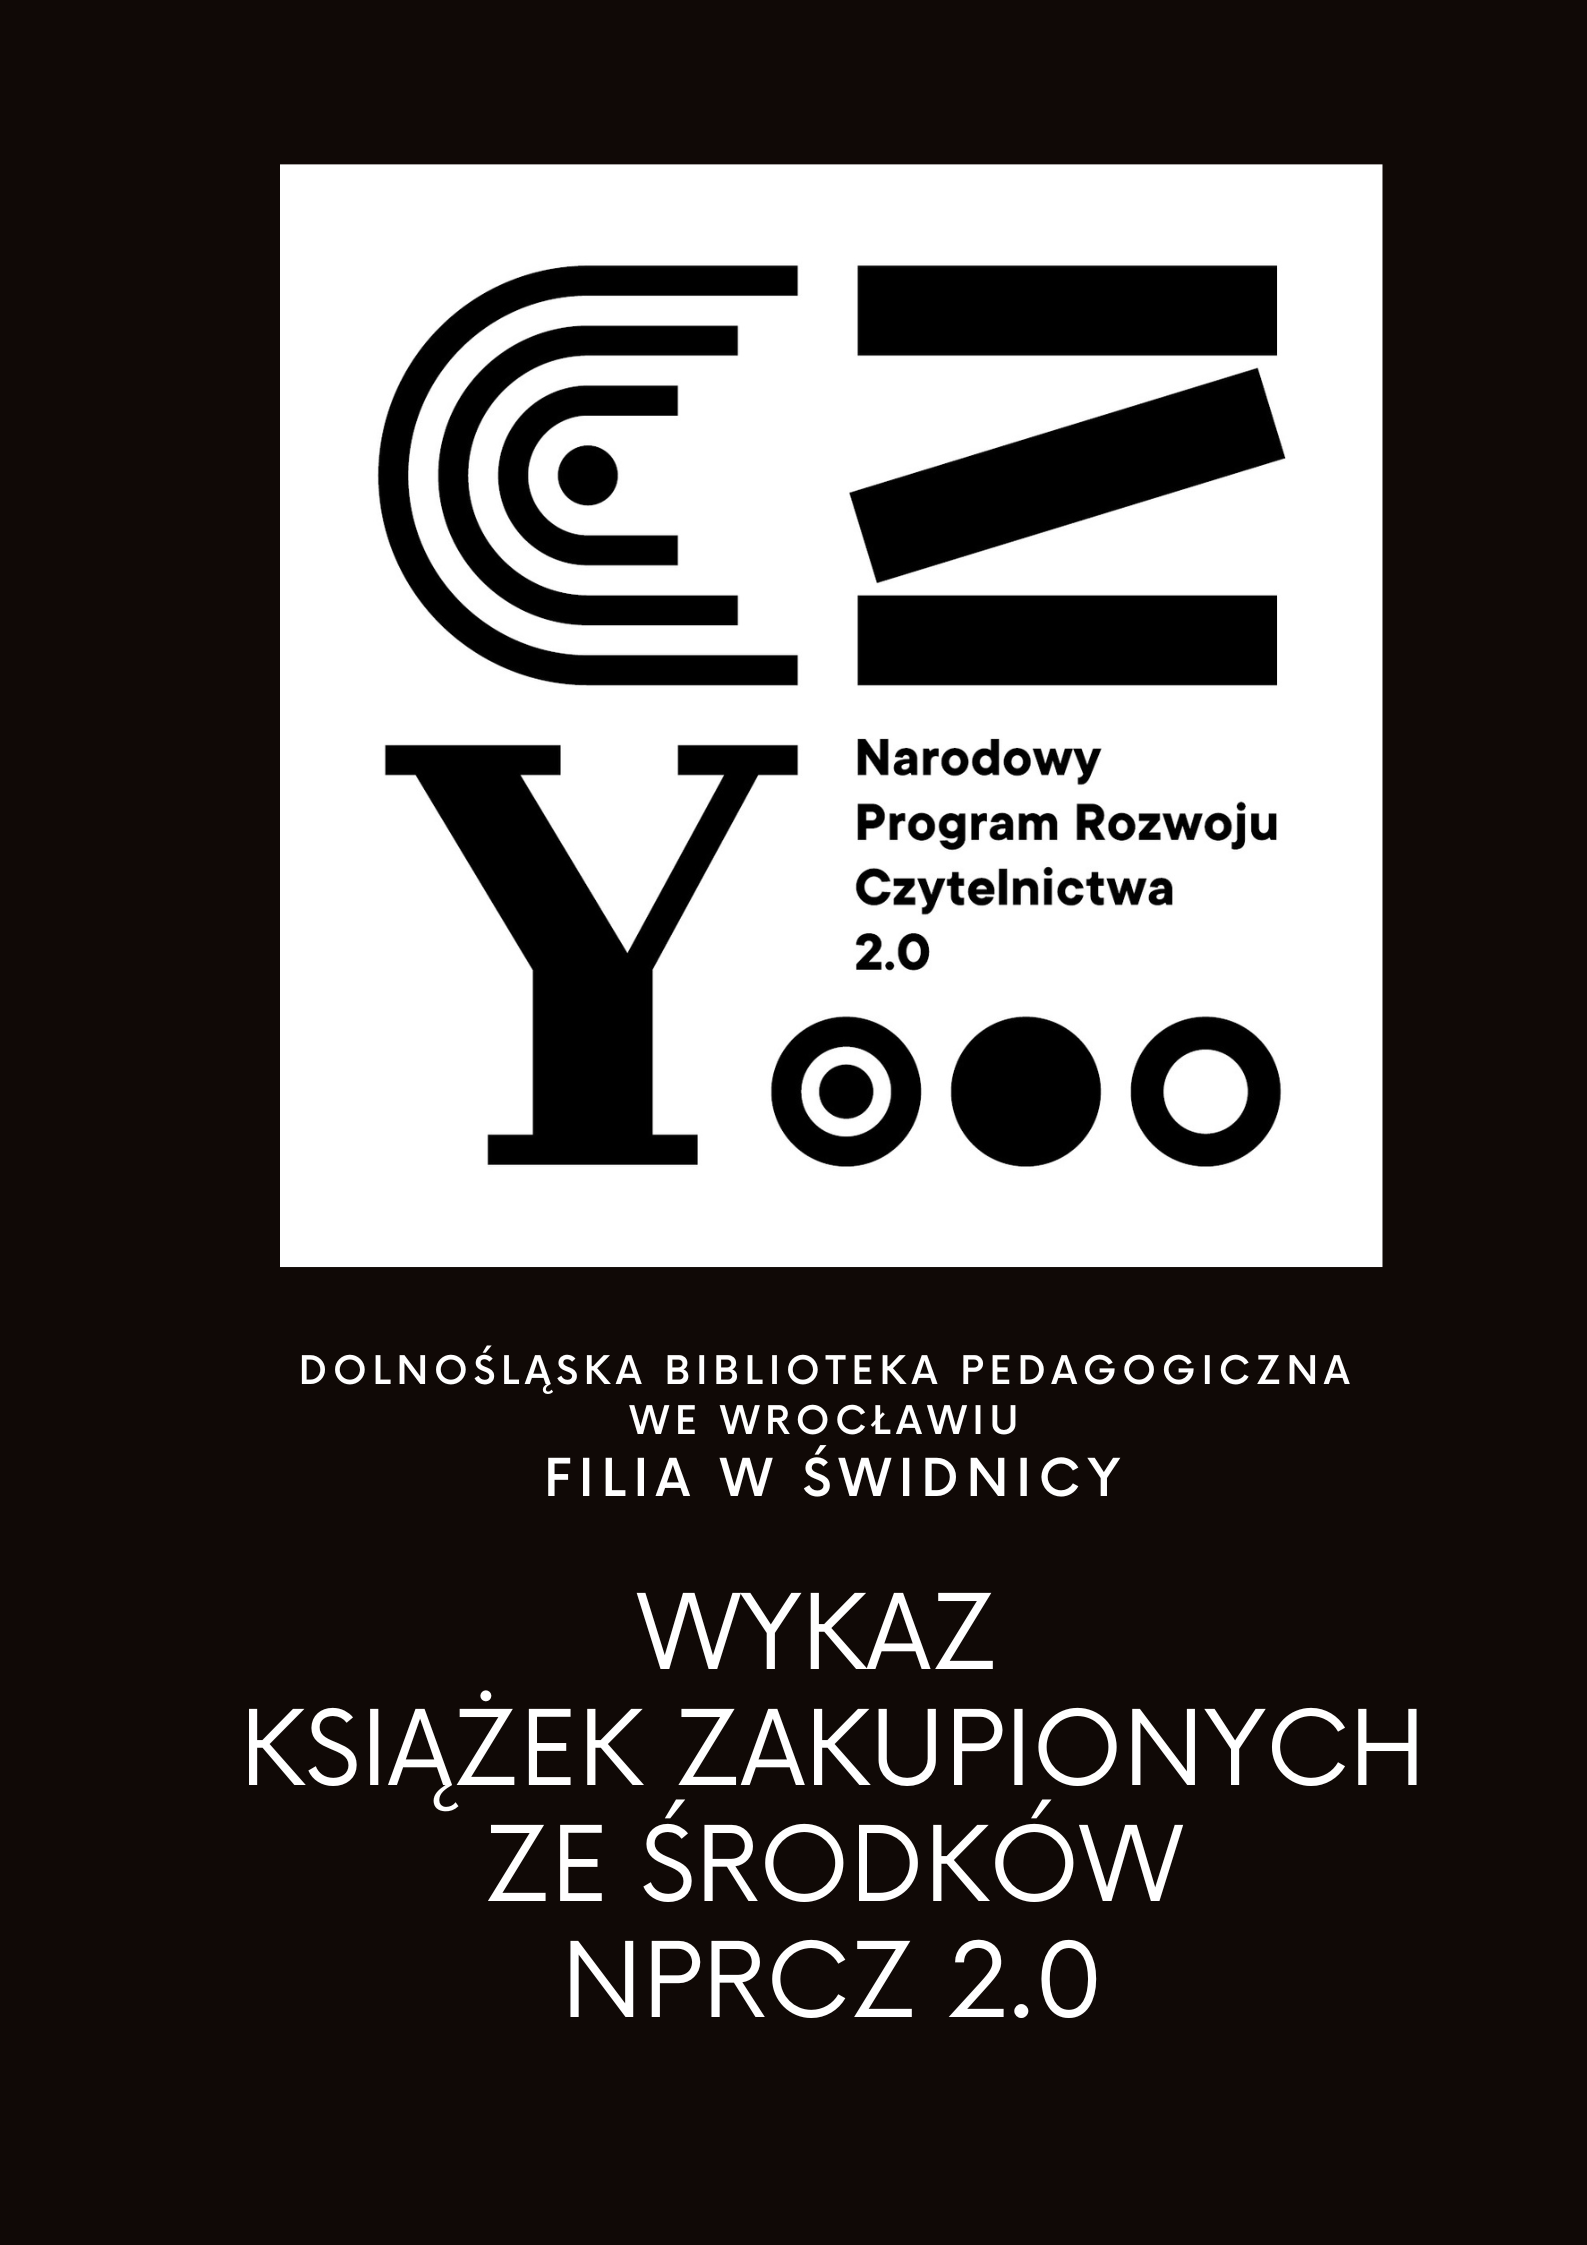 Wykaz zakupionych książek: Dolnośląska Biblioteka Pedagogiczna we Wrocławiu Filia w Świdnicy